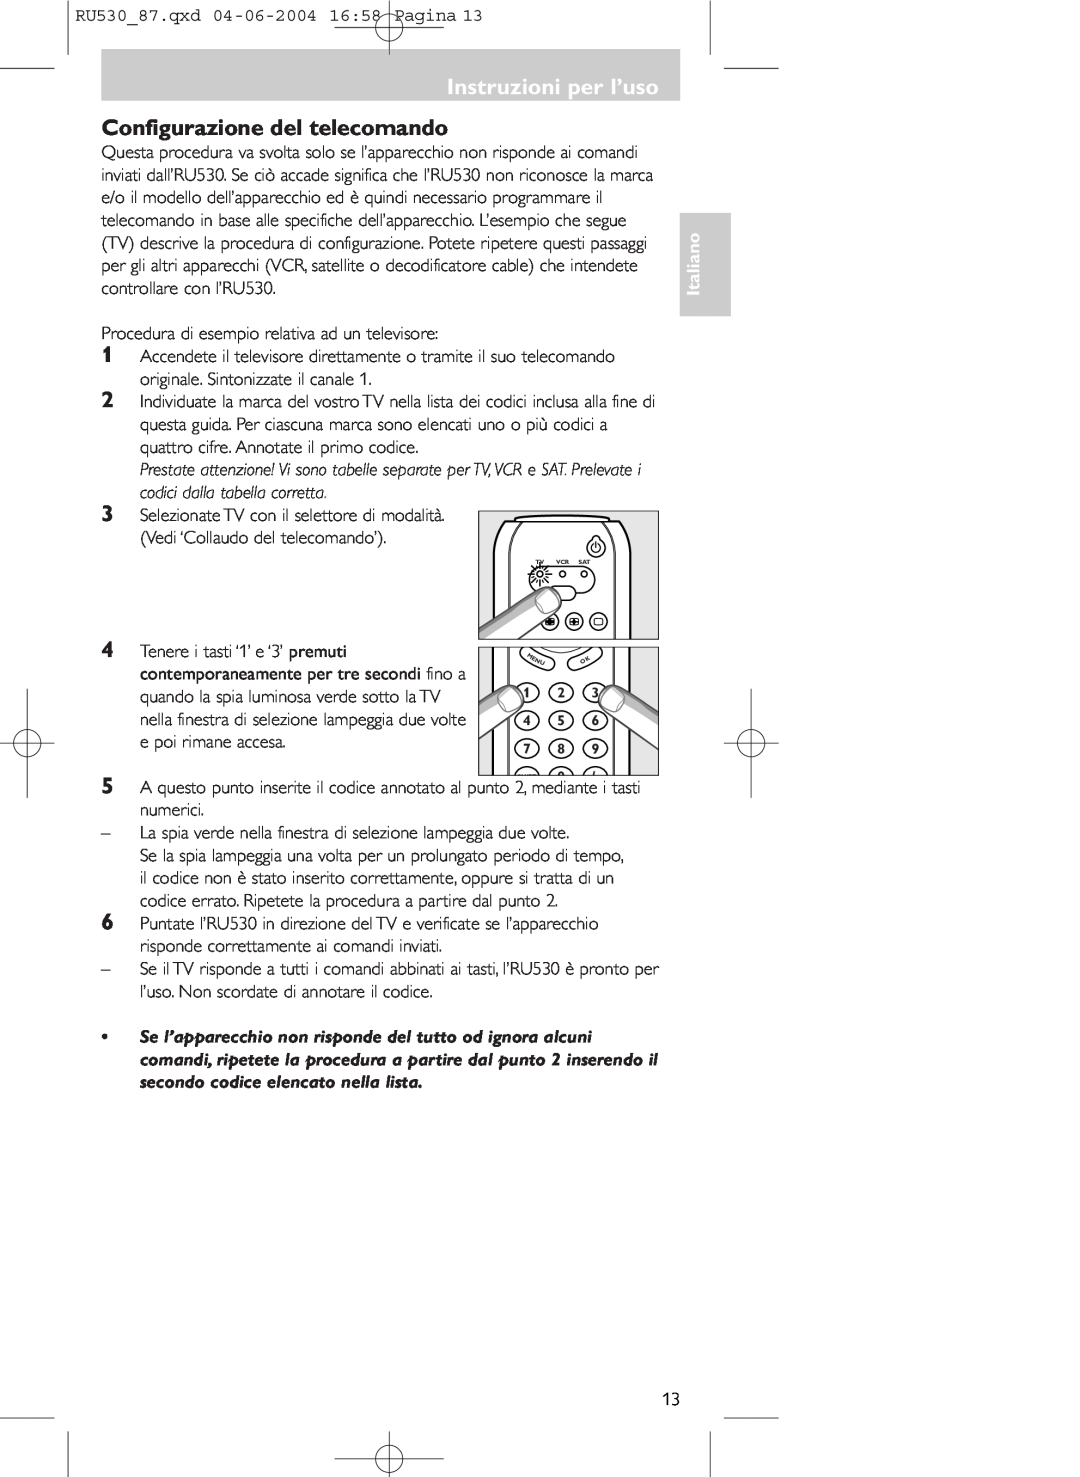 Philips SBC RU 530/87U manual Configurazione del telecomando, Instruzioni per l’uso, Italiano 